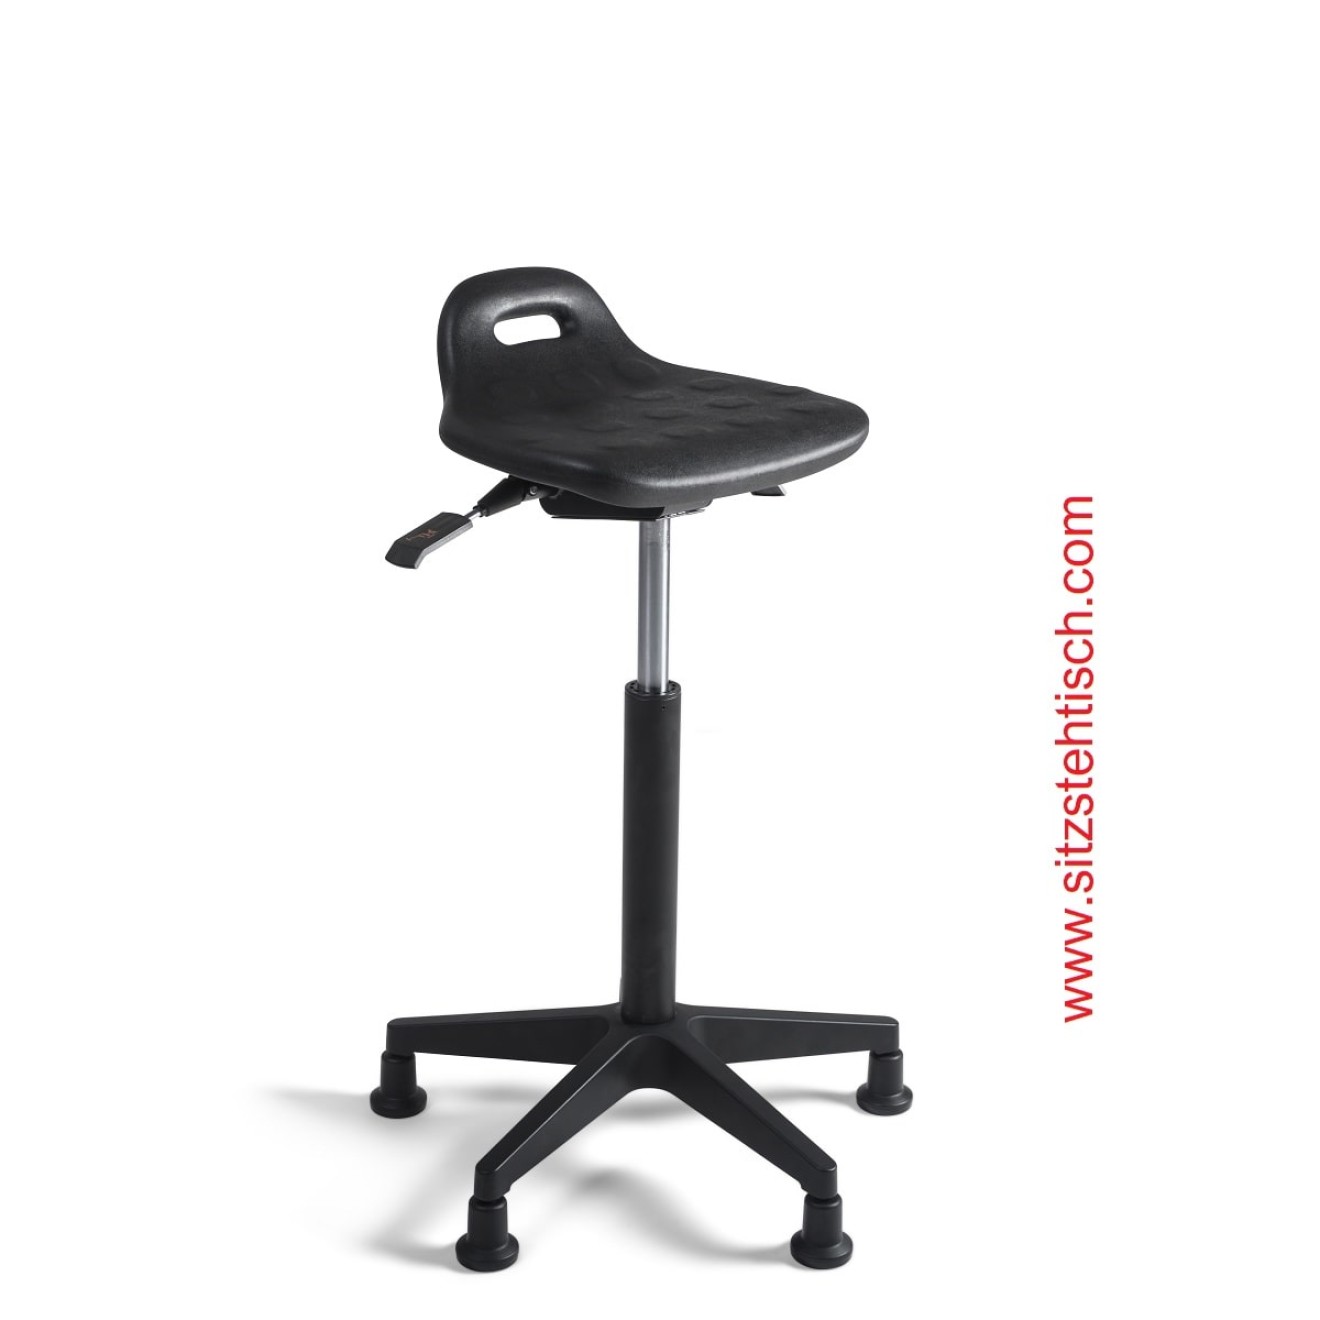 Stehhilfe Sitzhöhe- und Sitzwinkel verstellbar - Sitzfläche schwarzer PU Schaum - Fußkreuz Kunststoff mit Gleiter - 5 Jahre Garantie -100339